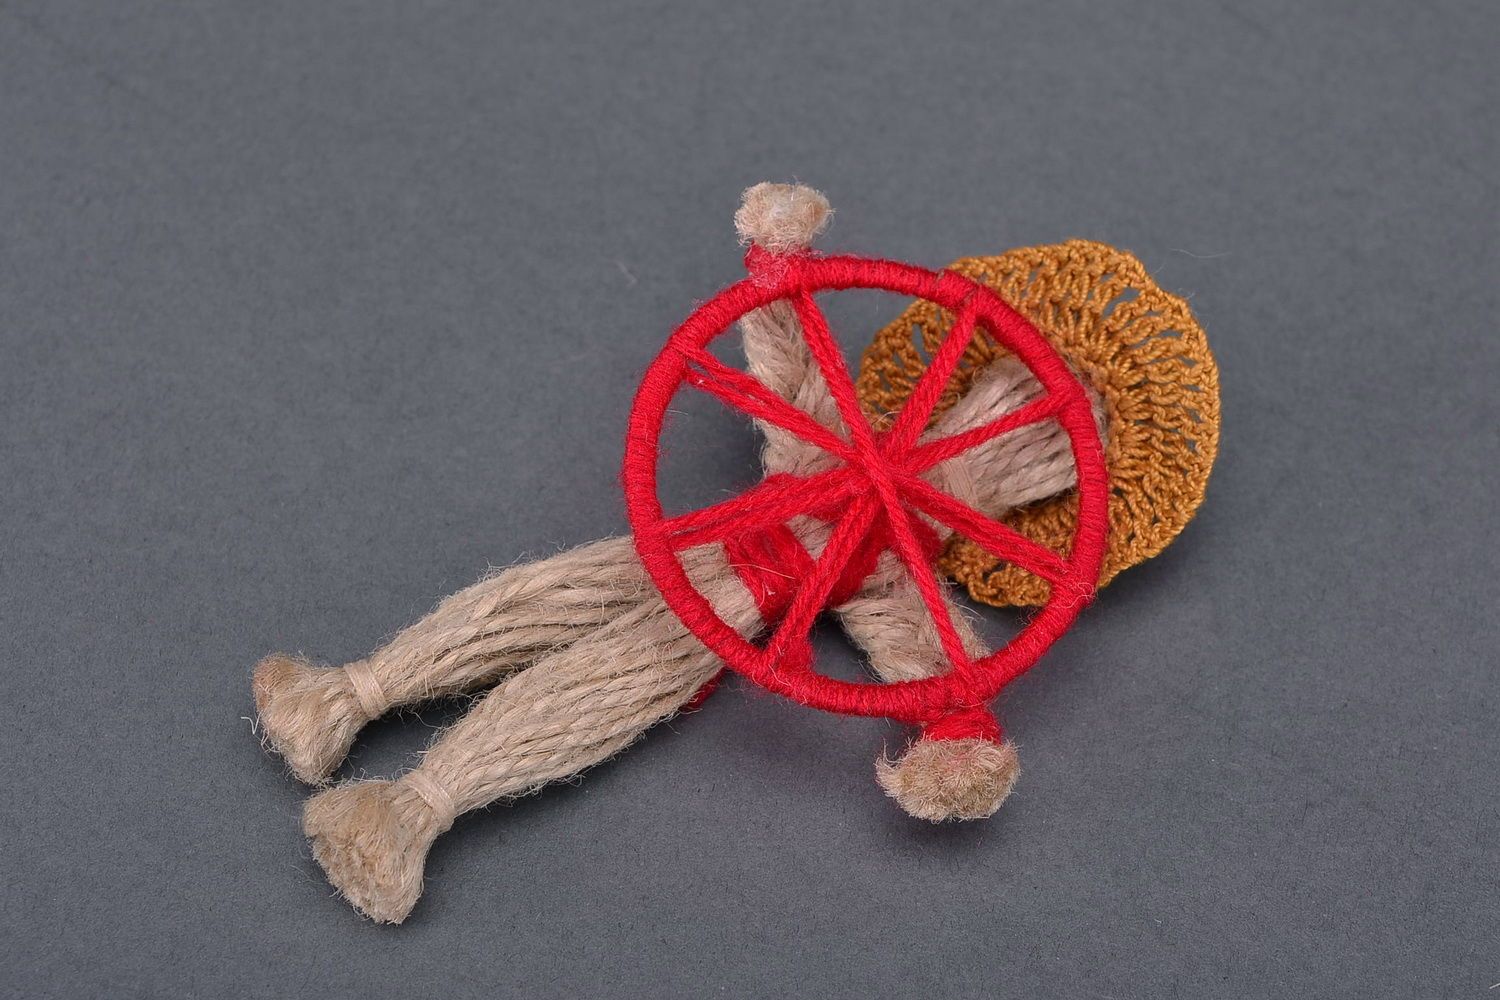 Bambola etnica di stoffa fatta a mano amuleto talismano giocattolo slavo foto 1